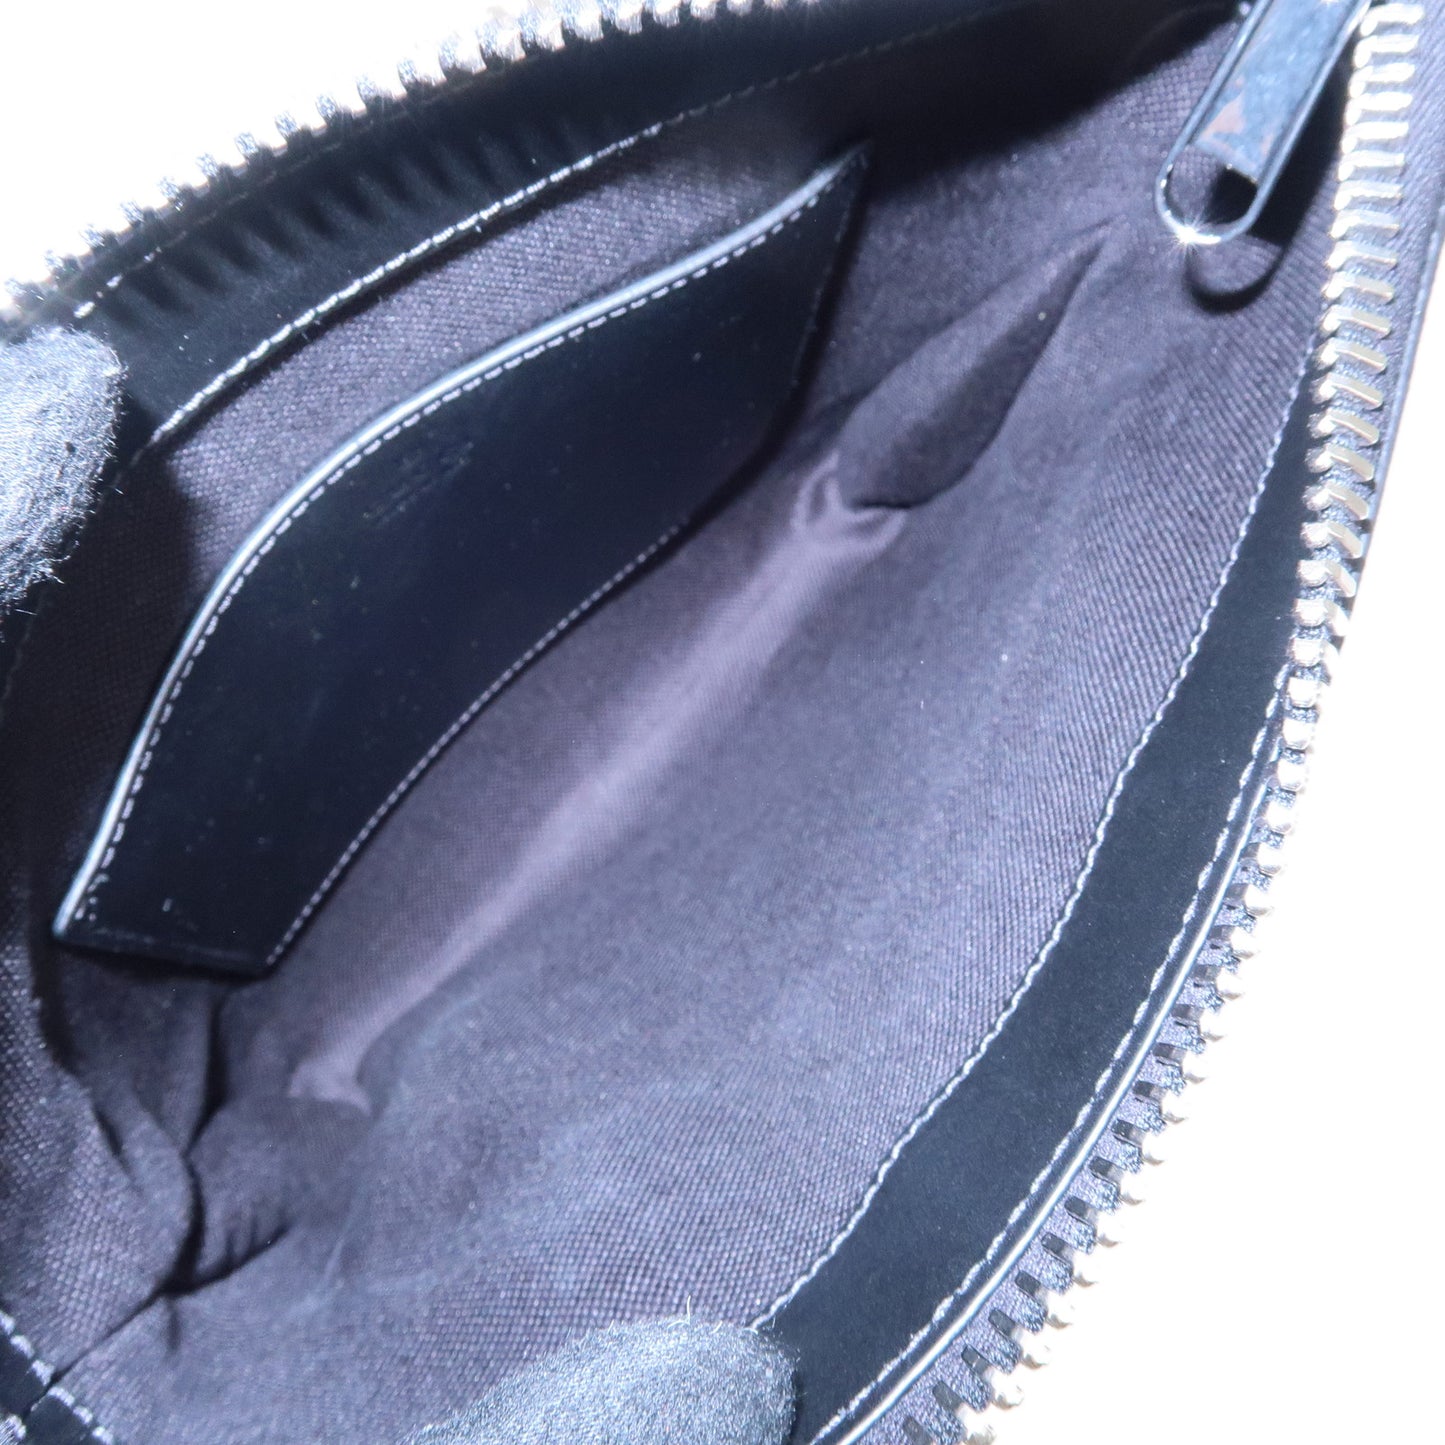 GUCCI GG Supreme Leather Small Messenger Shoulder Bag Black 523599